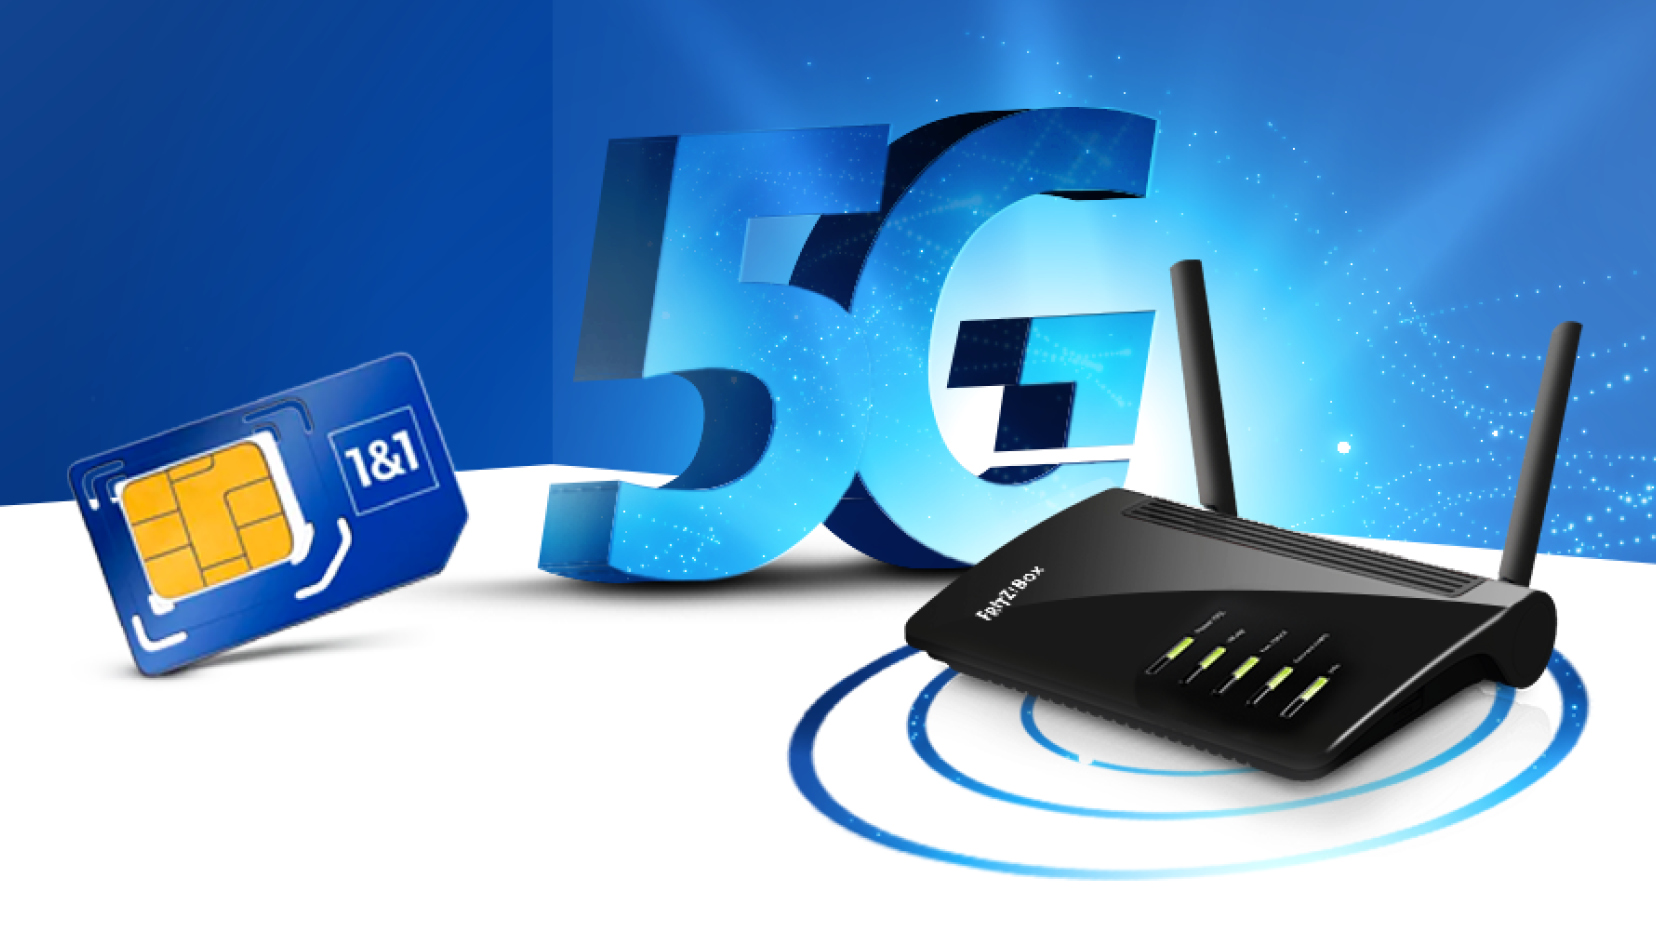 1&1 5G Tarife: Erster eigene 5G Tarif --1&1 ersetzt Festnetzanschlüsse durch 5G-Mobilfunk